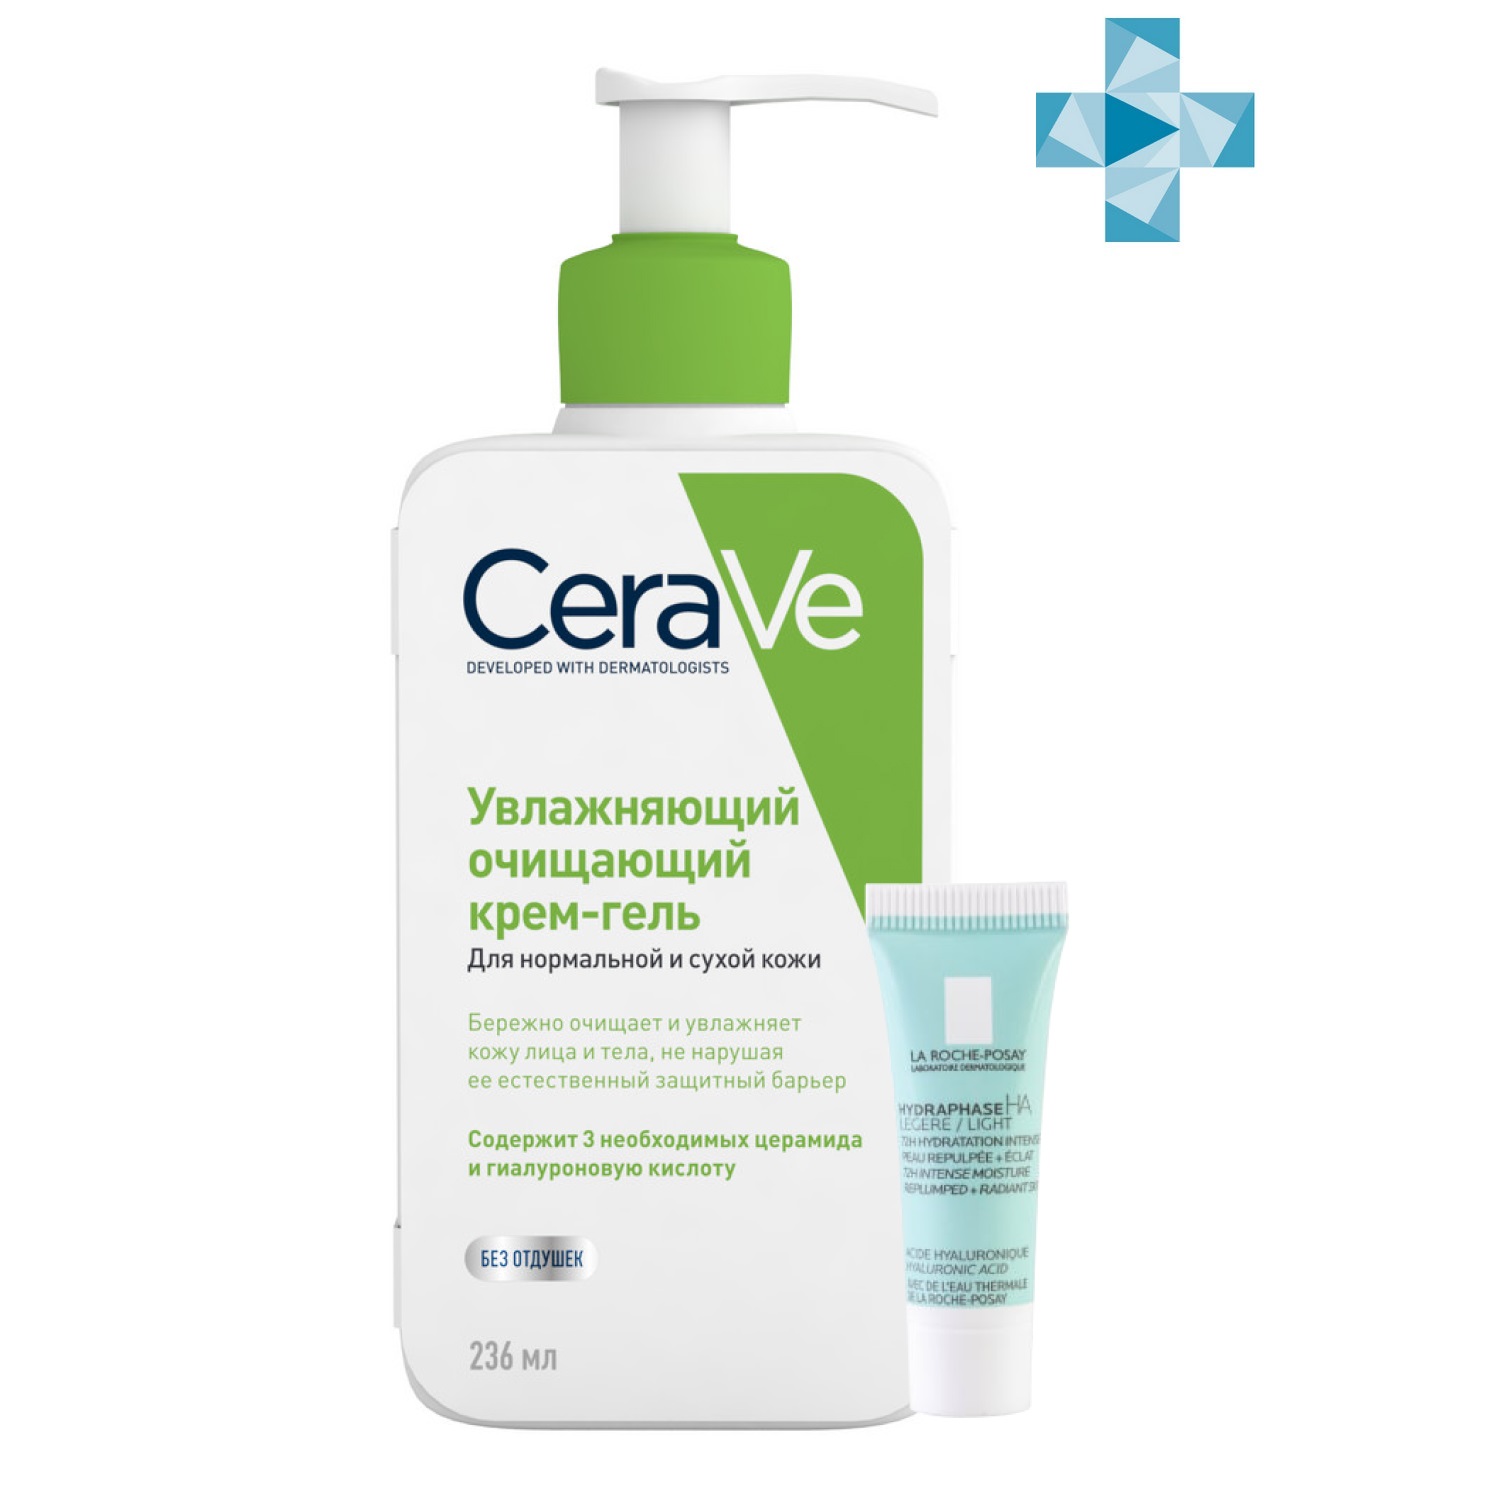 CeraVe Набор: Увлажняющий очищающий крем-гель CeraVe для нормальной и сухой кожи, 236 мл + Легкий крем Hydraphase HA для обезвоженной кожи лица, 3 мл (CeraVe, Очищение кожи)